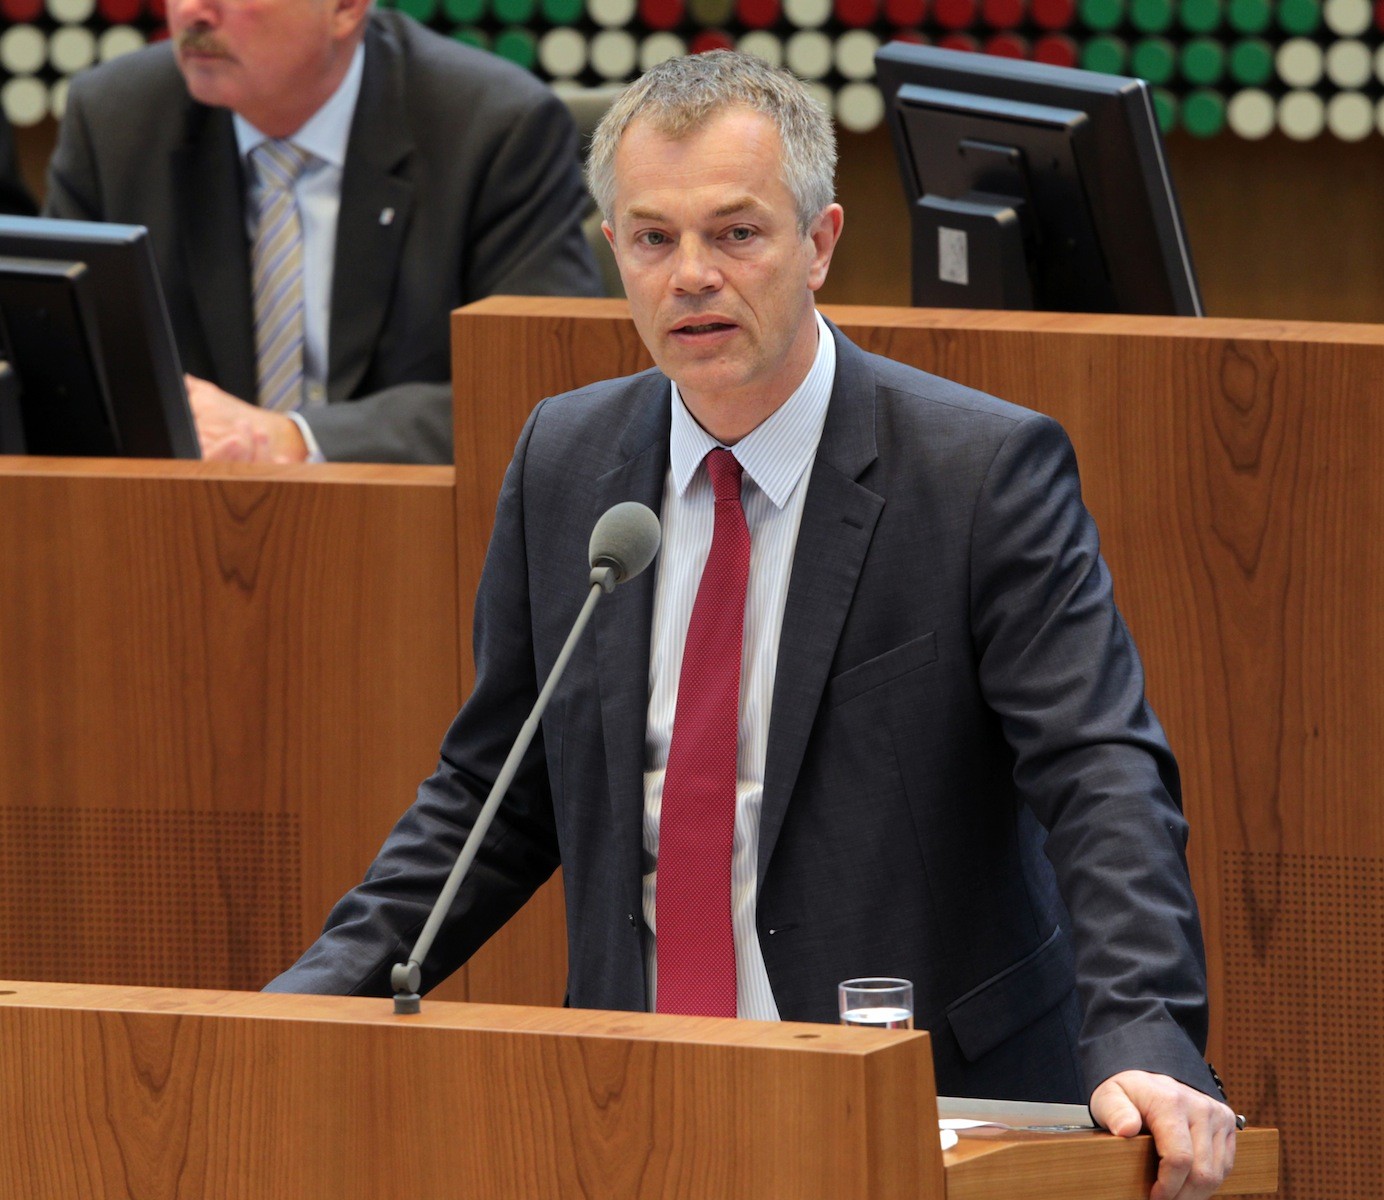 Foto: Bernd Schälte/Bildarchiv des Landtags NRW